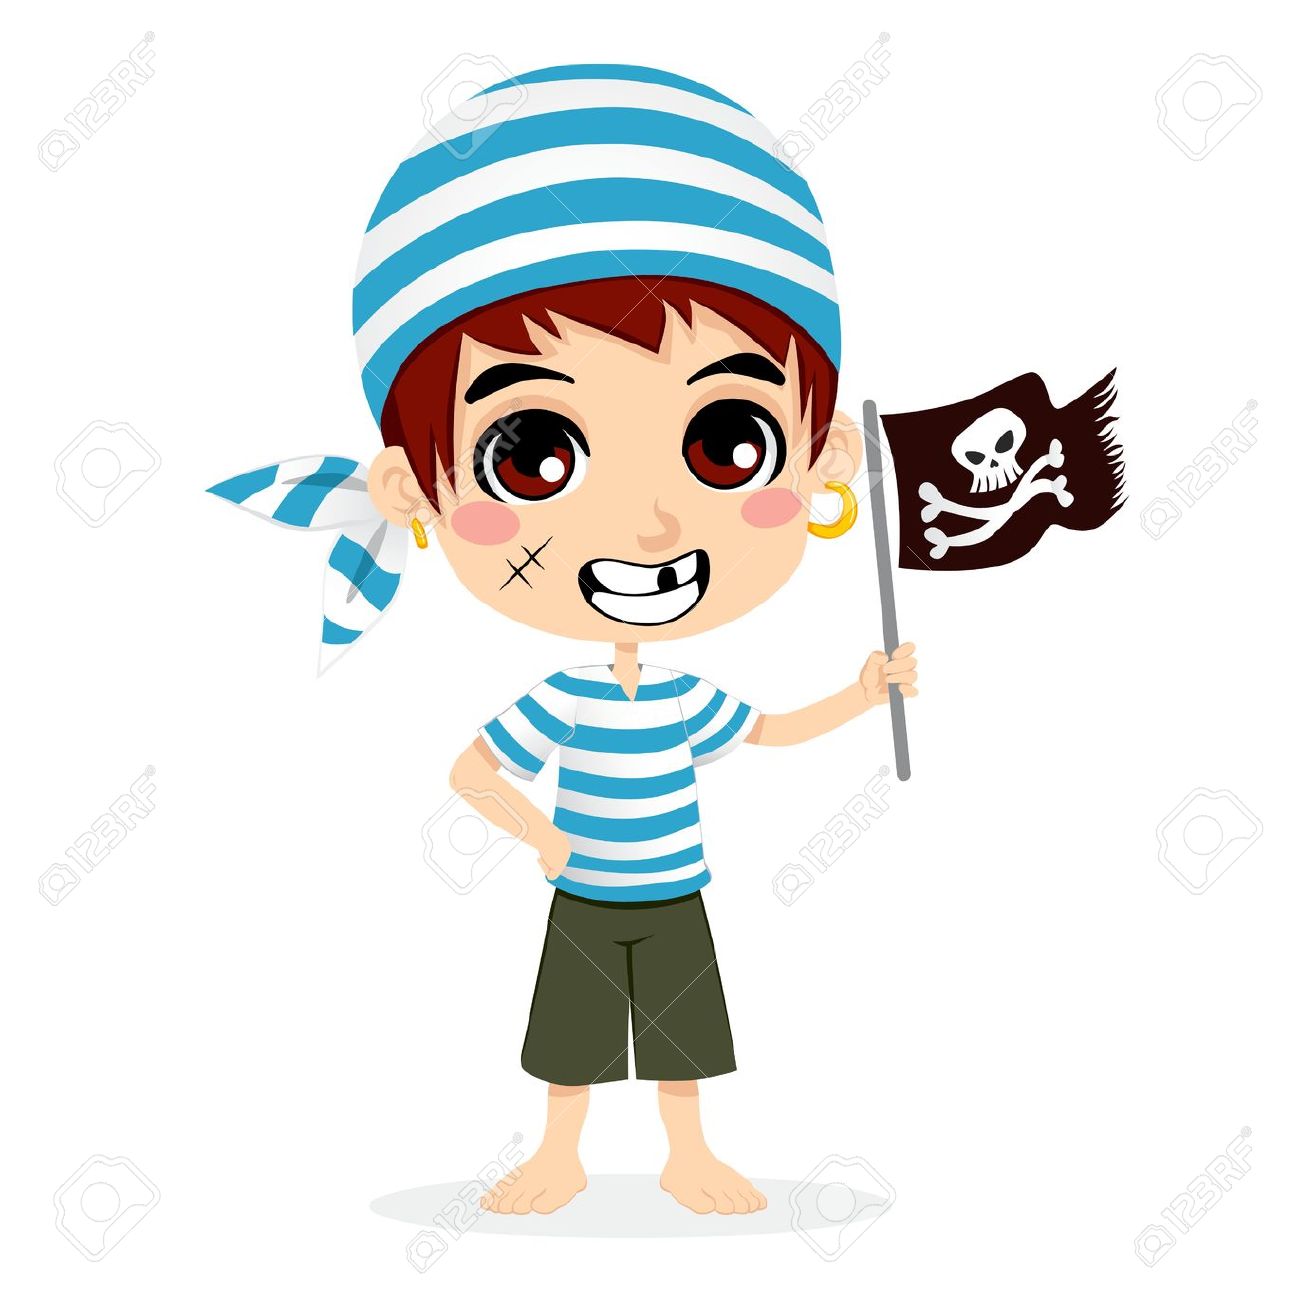 14971736-Petit-enfant-en-costume-de-marin-pirate-cr-ne-souriant-holding-et-drapeau-d-os-crois-s-Banque-d'images.jpg